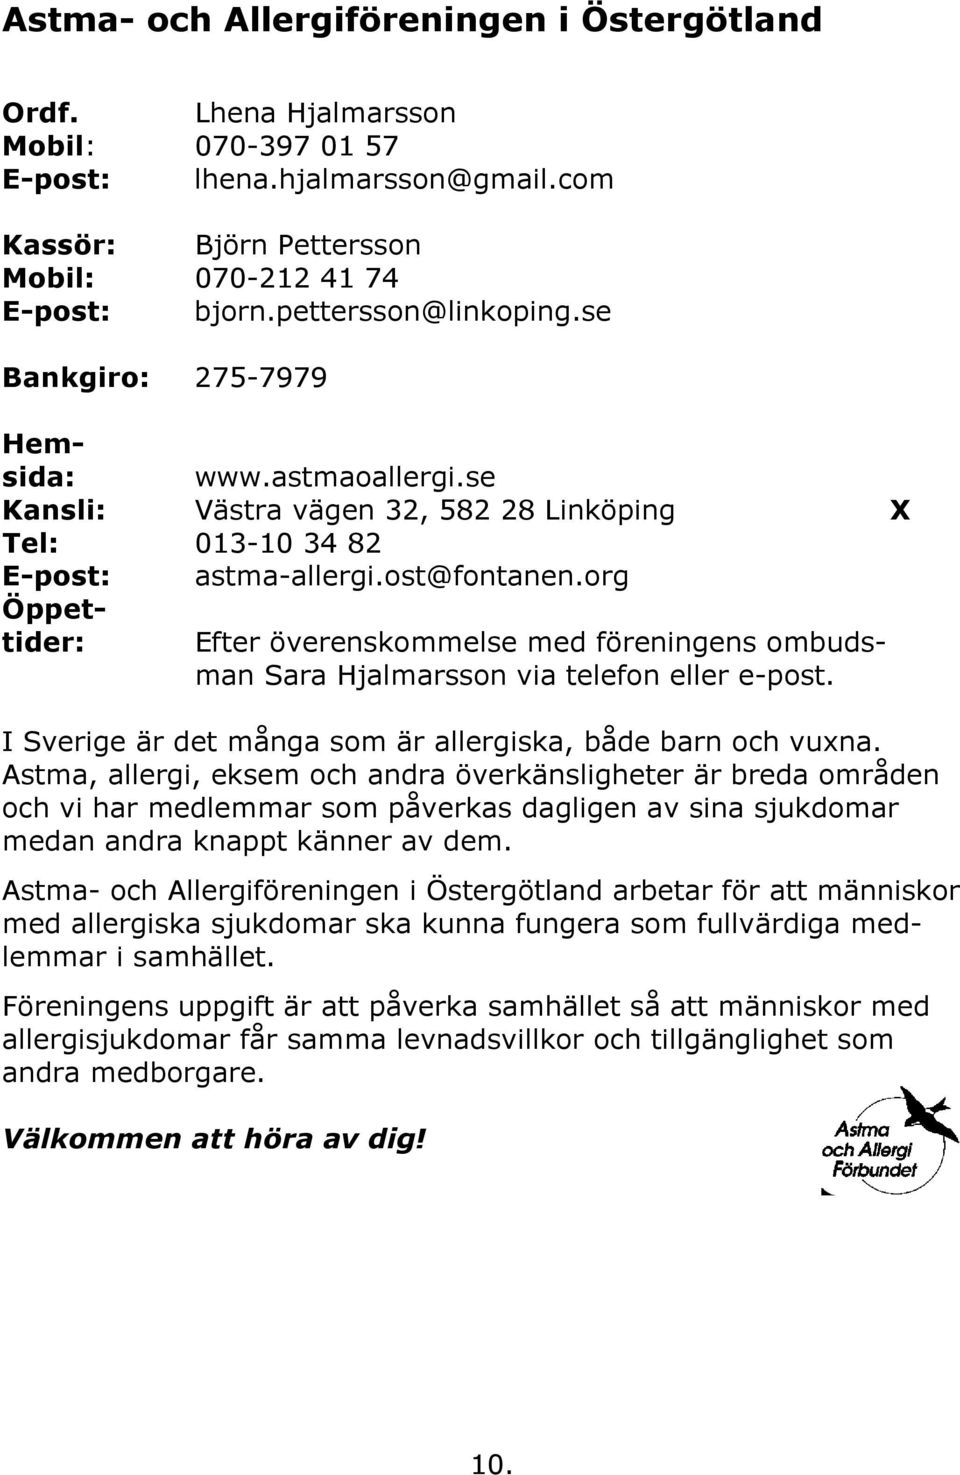 org Öppettider: Efter överenskommelse med föreningens ombudsman Sara Hjalmarsson via telefon eller e-post. I Sverige är det många som är allergiska, både barn och vuxna.